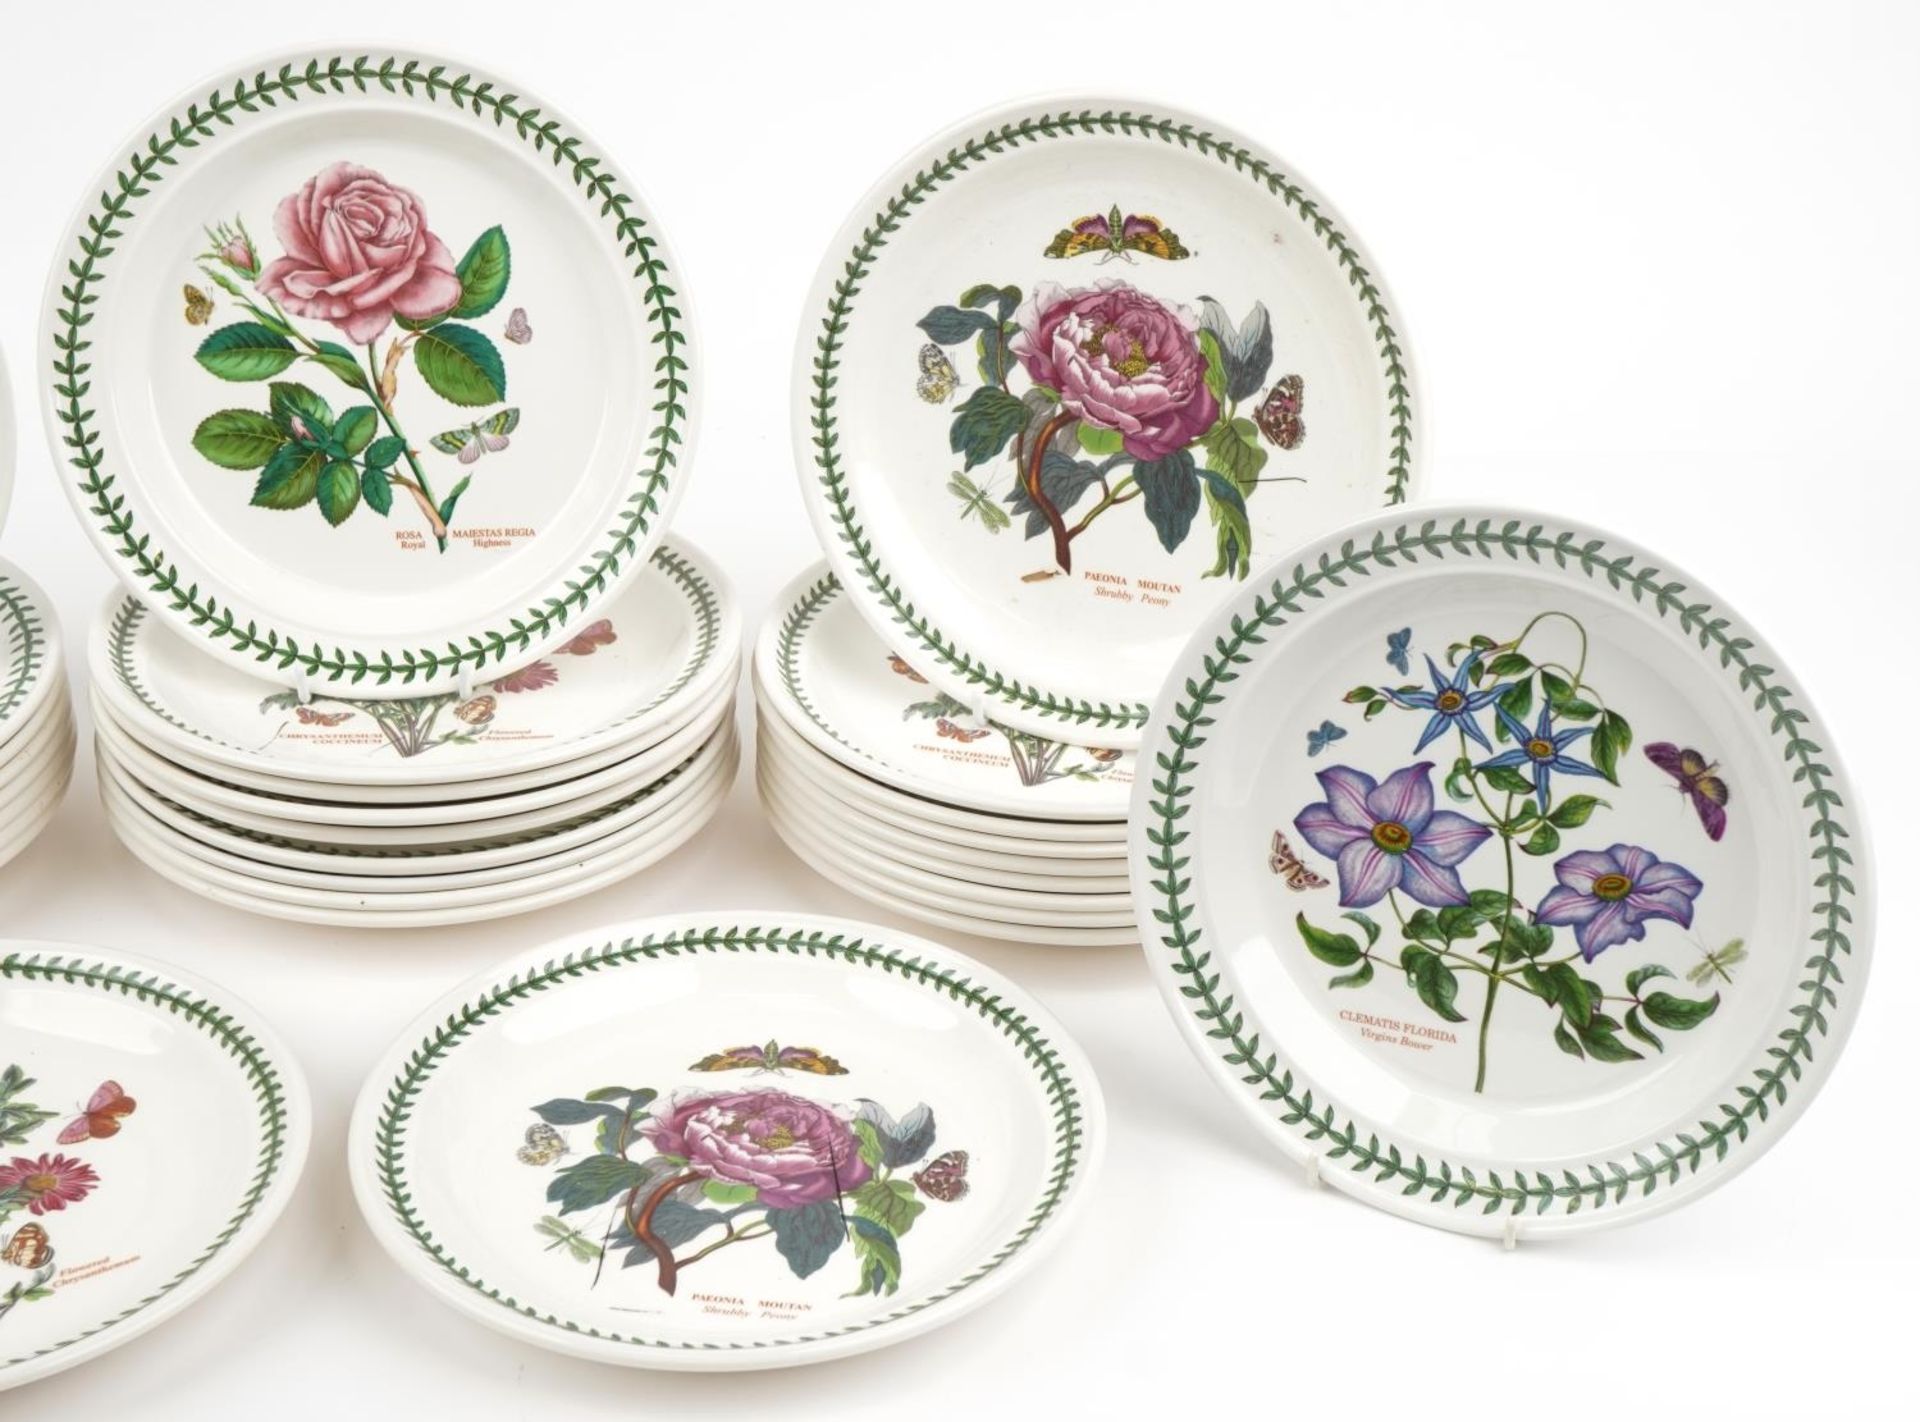 Thirty Portmeirion Botanic garden dinner plates, 27cm in diameter - Image 6 of 8